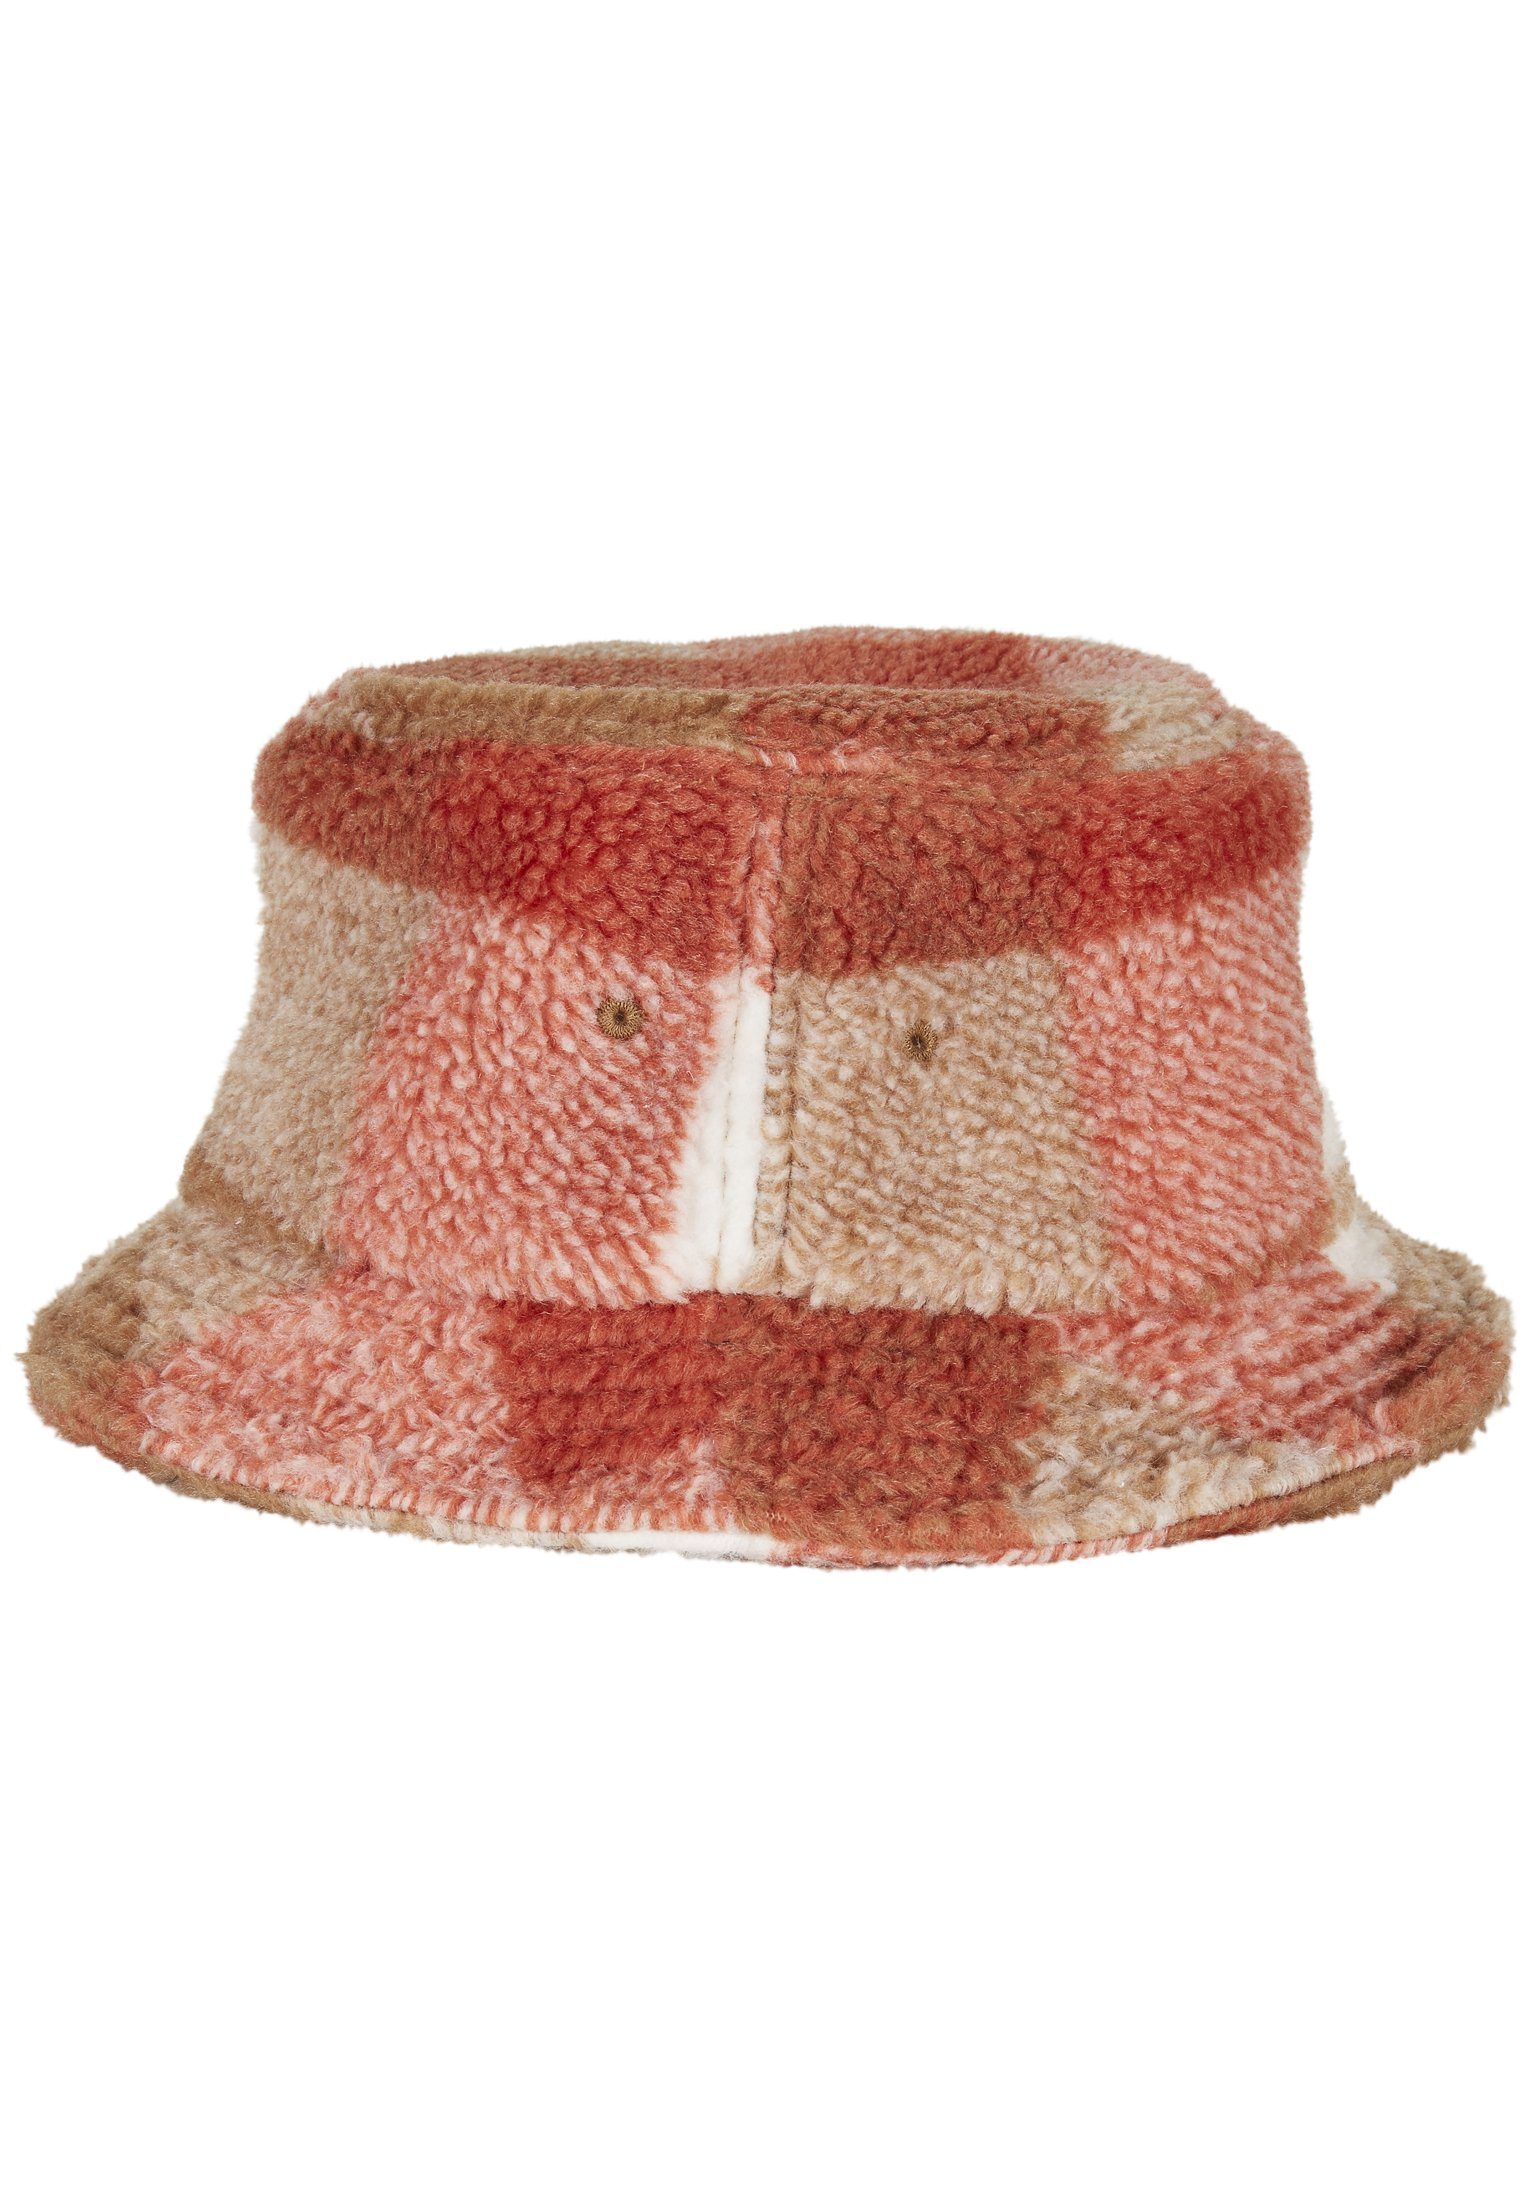 Cap Hat Flex Bucket Flexfit Hat Check whitesand/toffee Sherpa Bucket